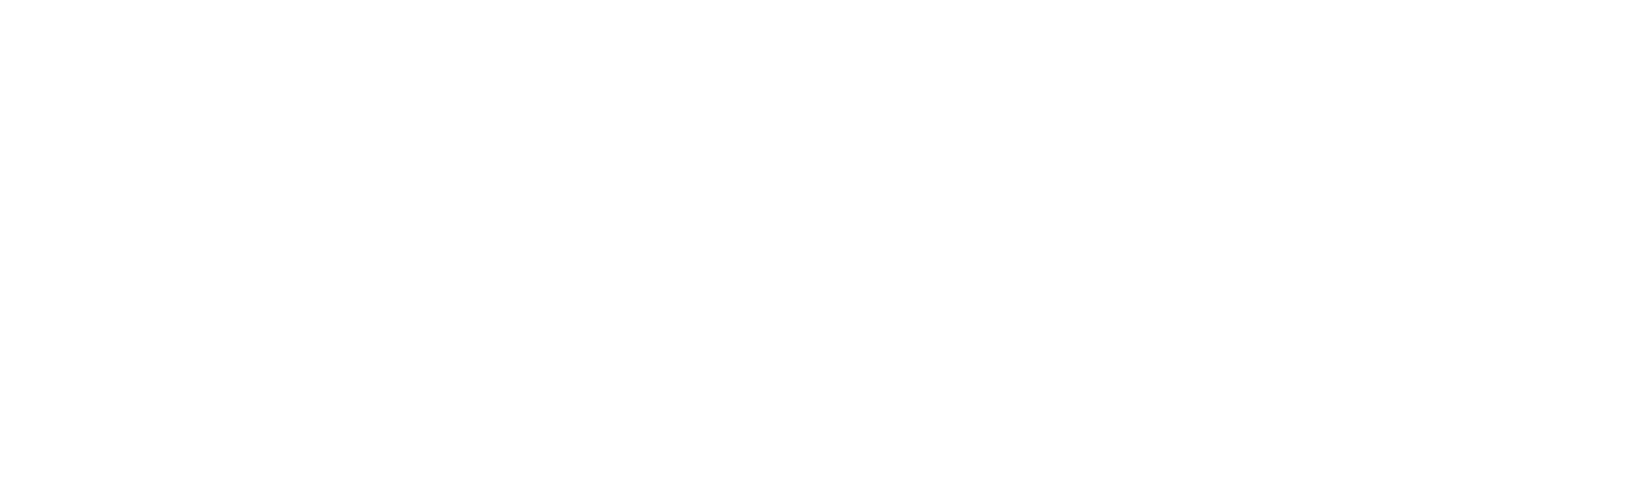 Legio Christi logo